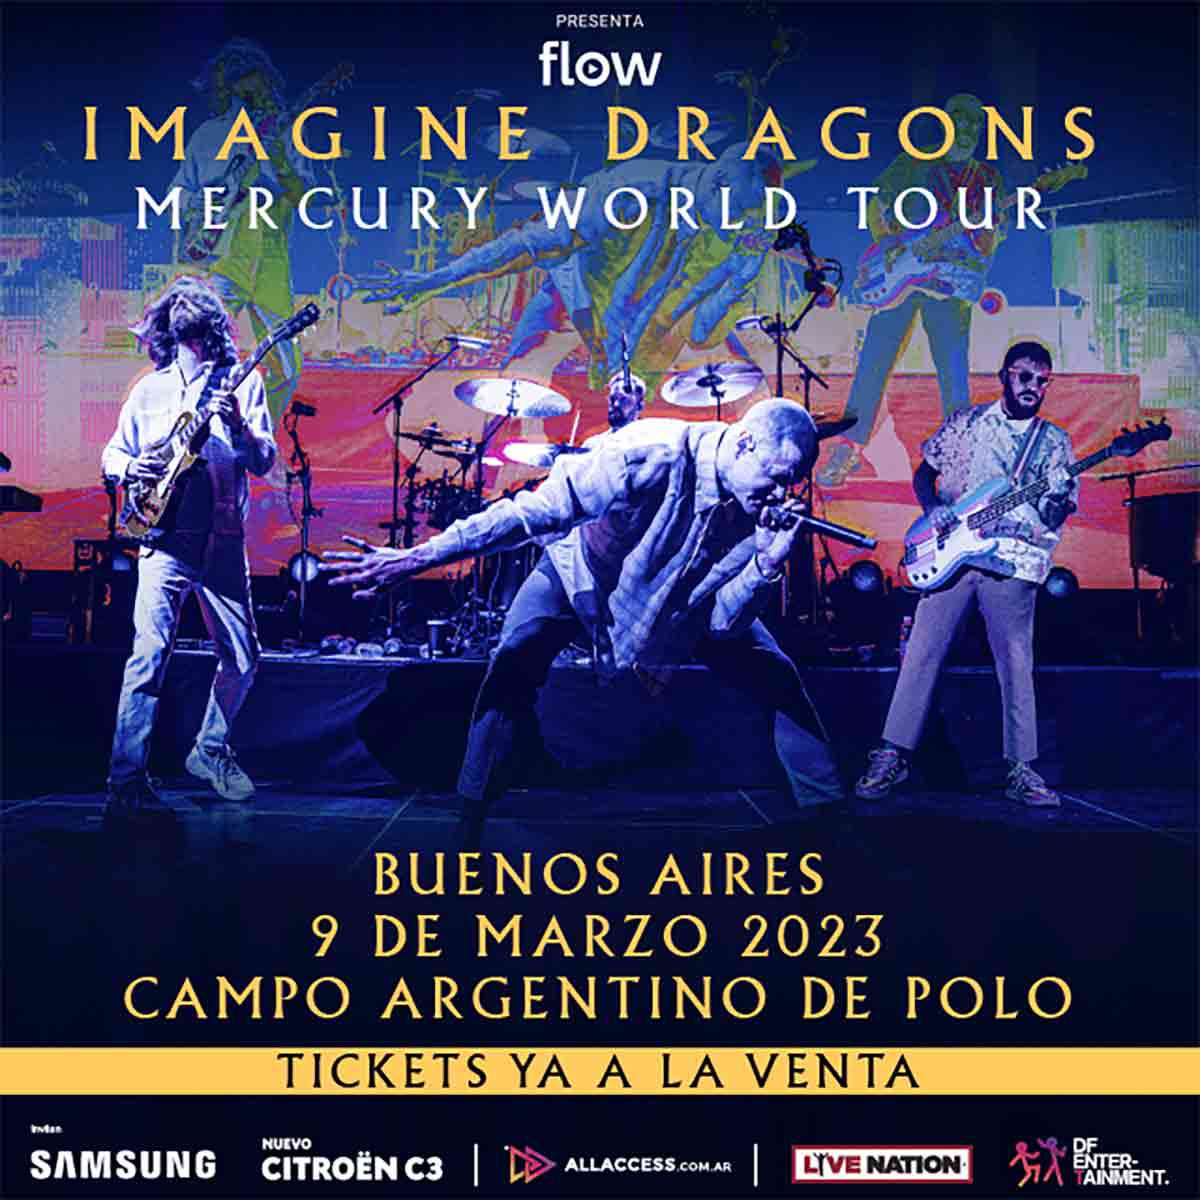 Imagine Dragons anuncia show en Argentina